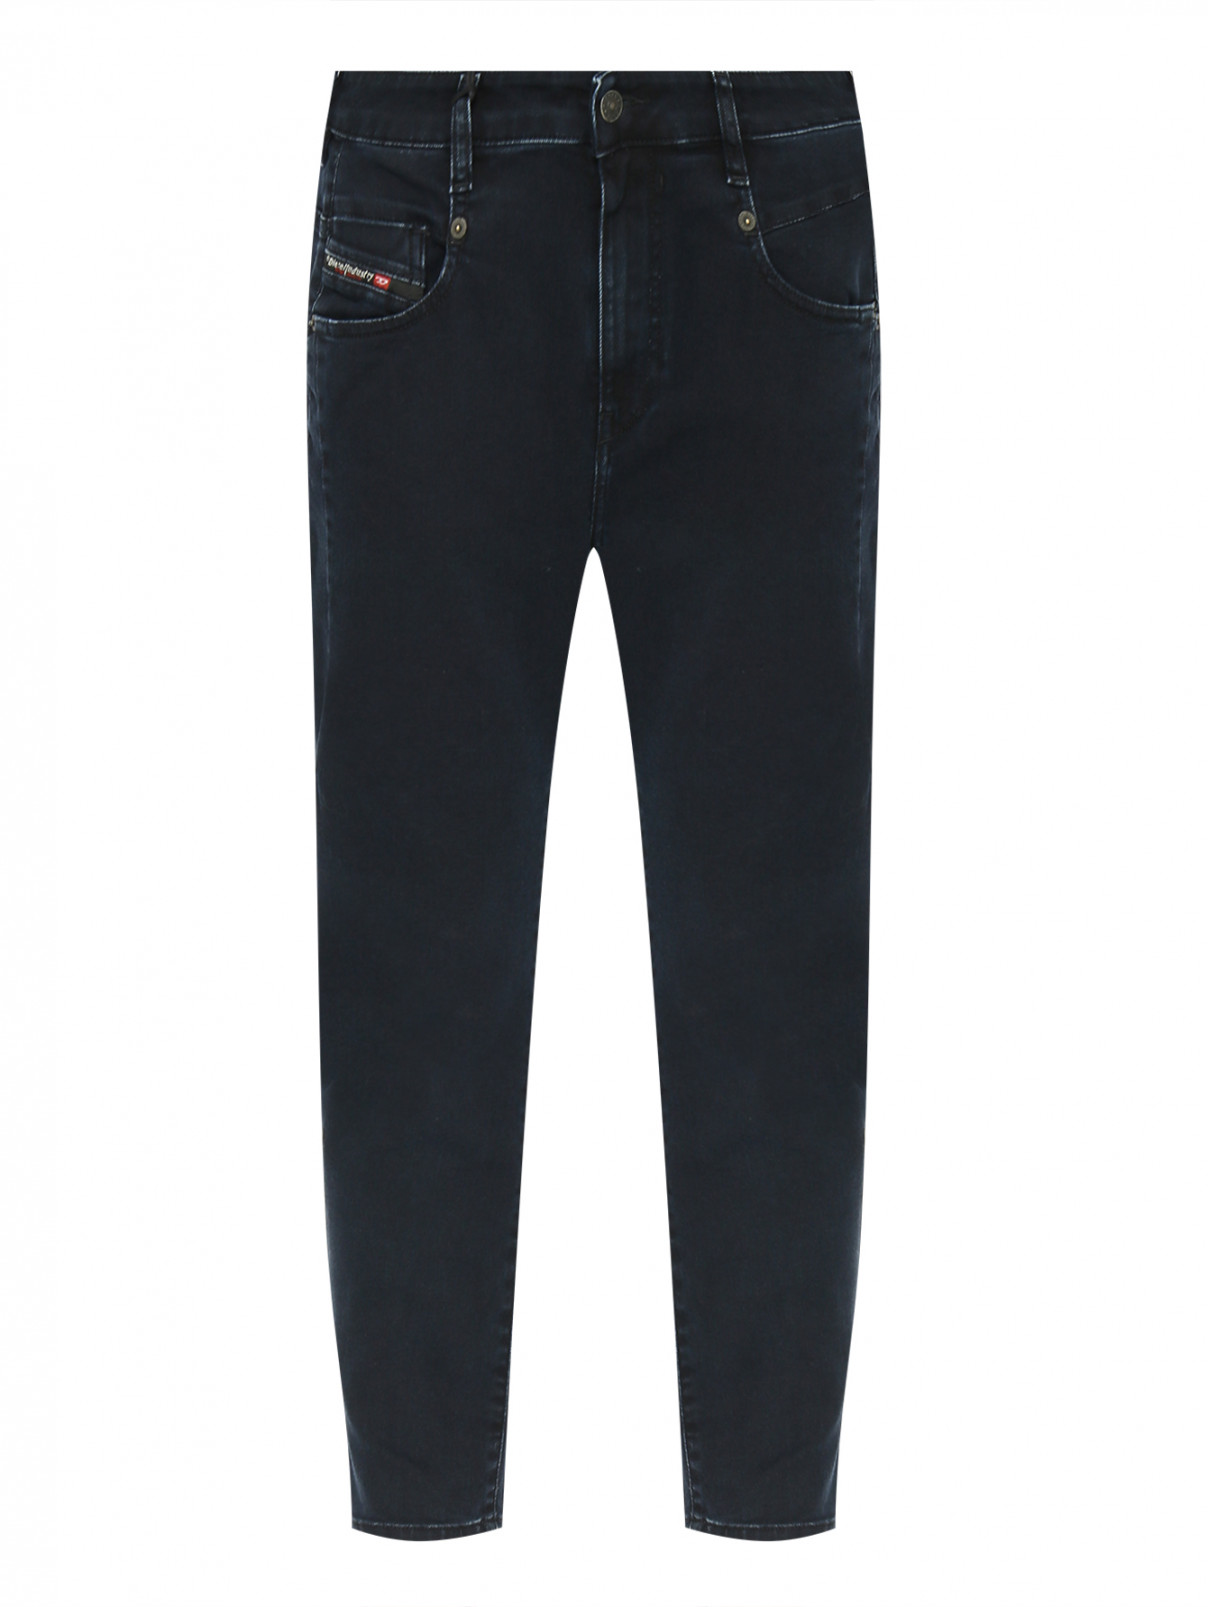 Однотонные джинсы с рельефными швами Diesel  –  Общий вид  – Цвет:  Синий